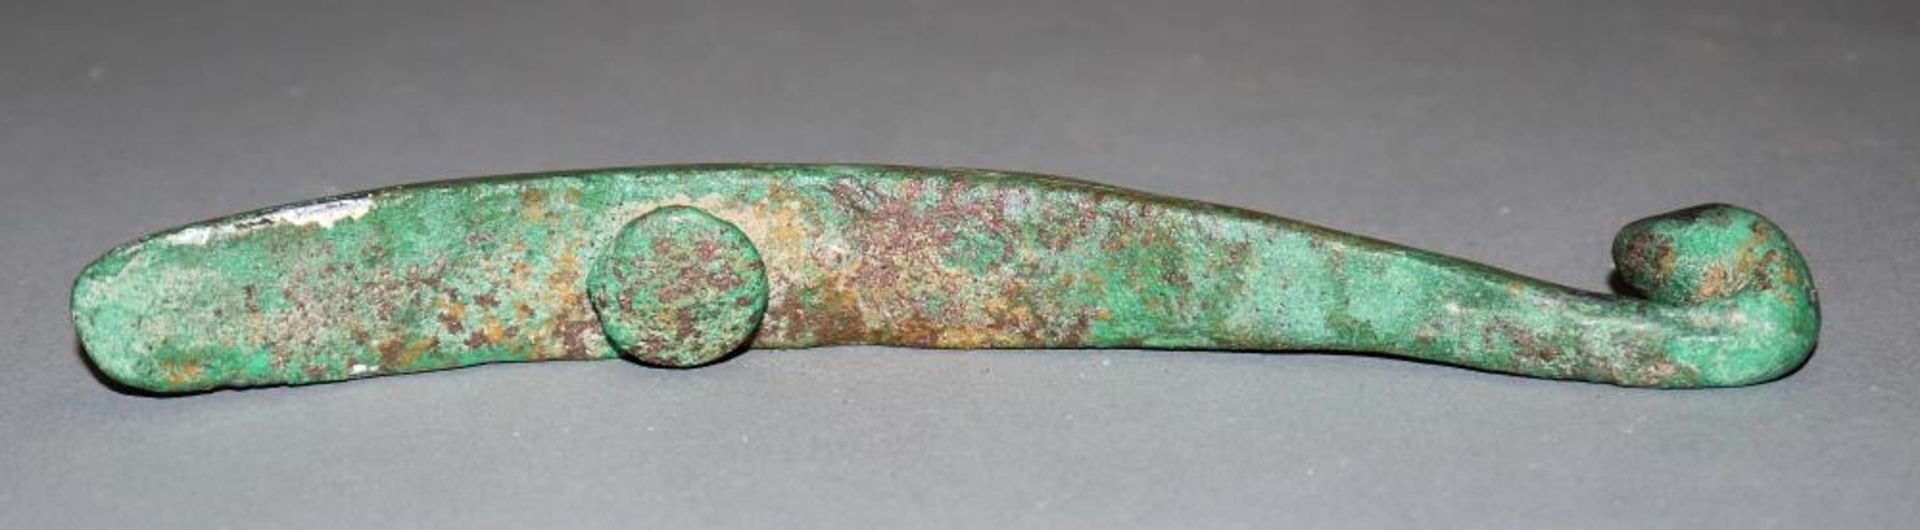 Großer Gürtelhaken aus Bronze, wohl Streitende Reiche oder Han, China 3. Jh. v. Chr. oder später - Bild 3 aus 3